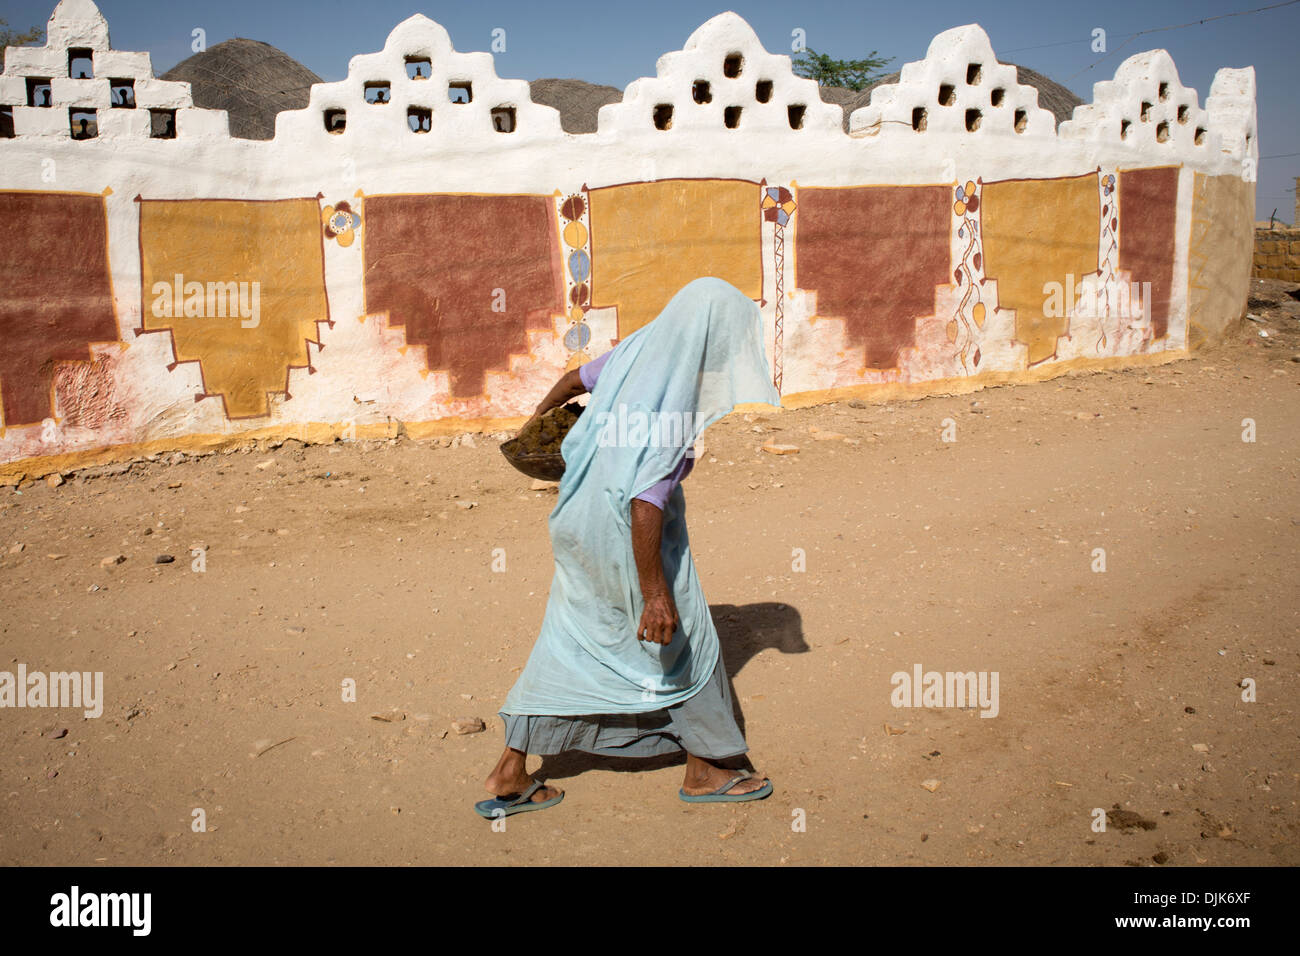 Eine Frau geht entlang der Wand eines Hauses mit Zeichnungen, Farben und Stil dieser nördlichen Region von Rajasthan verziert. Stockfoto